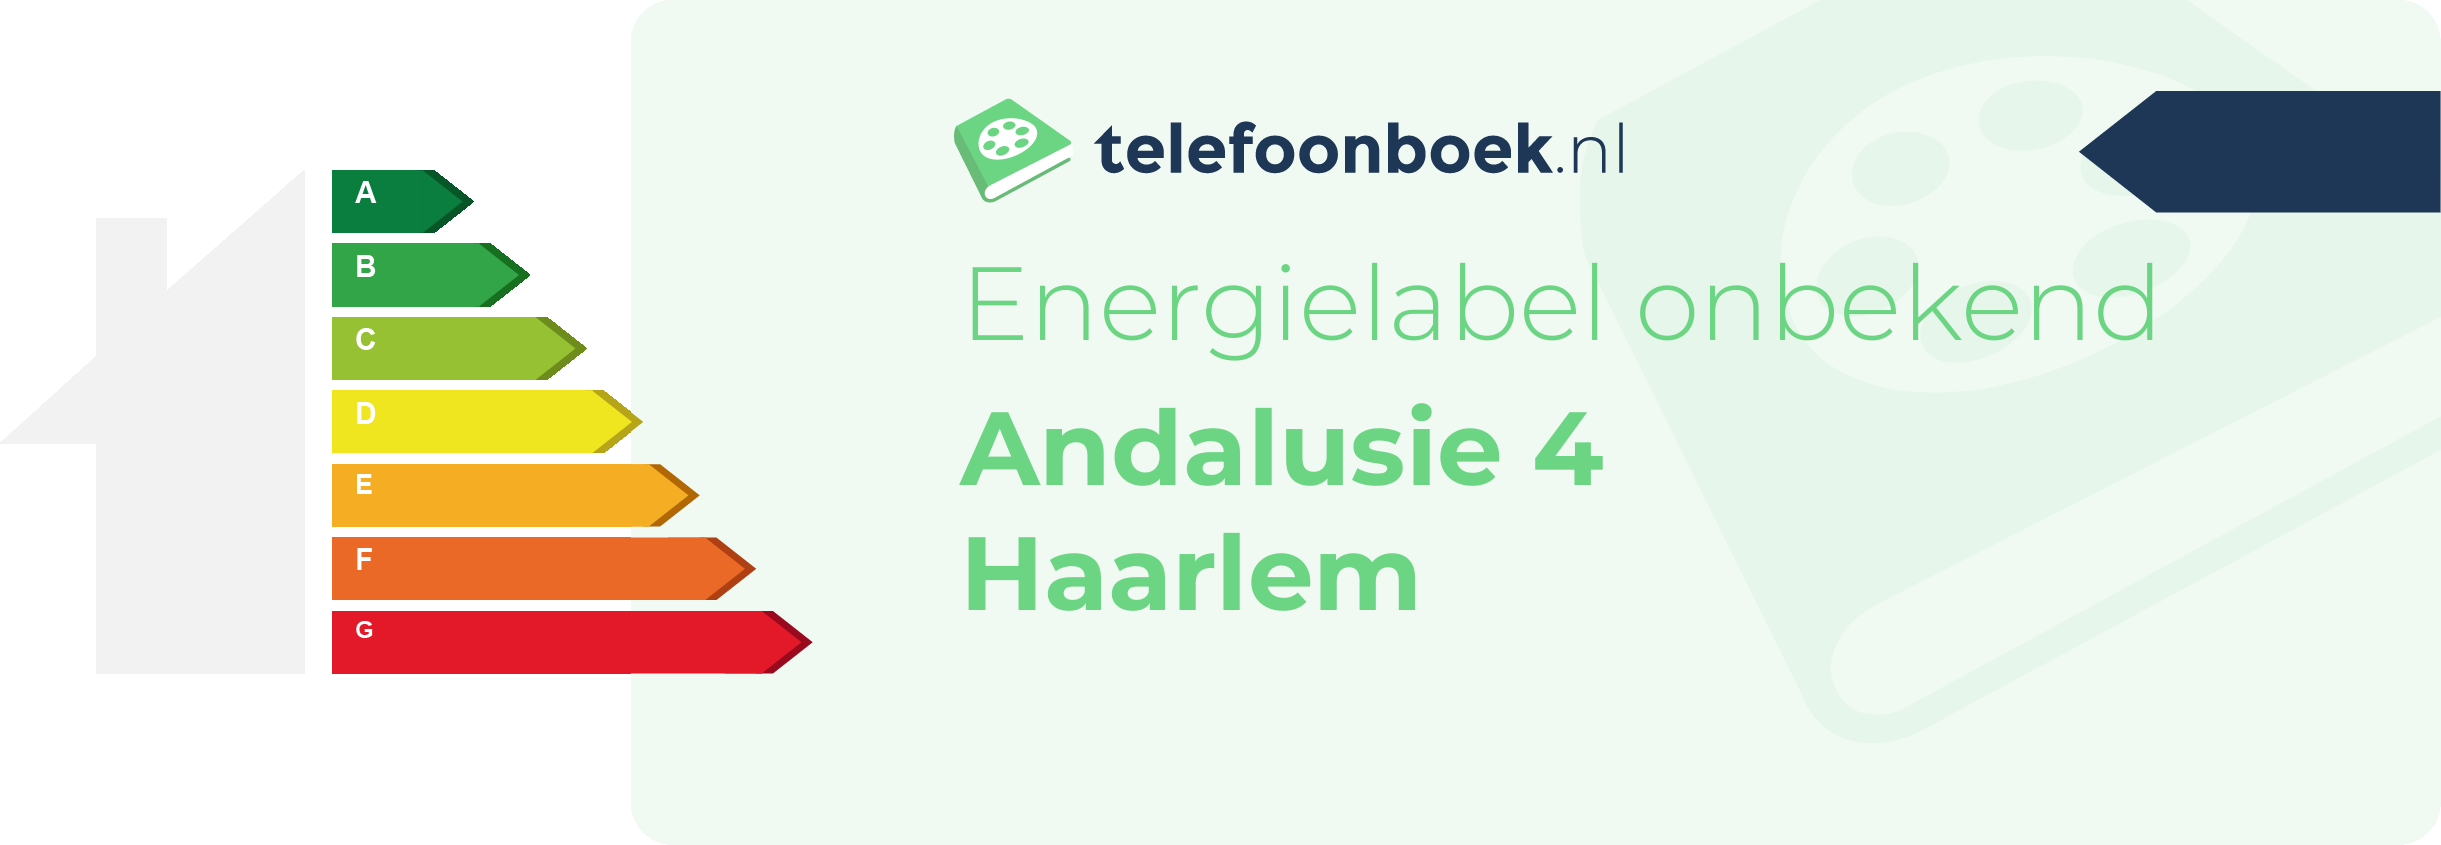 Energielabel Andalusie 4 Haarlem